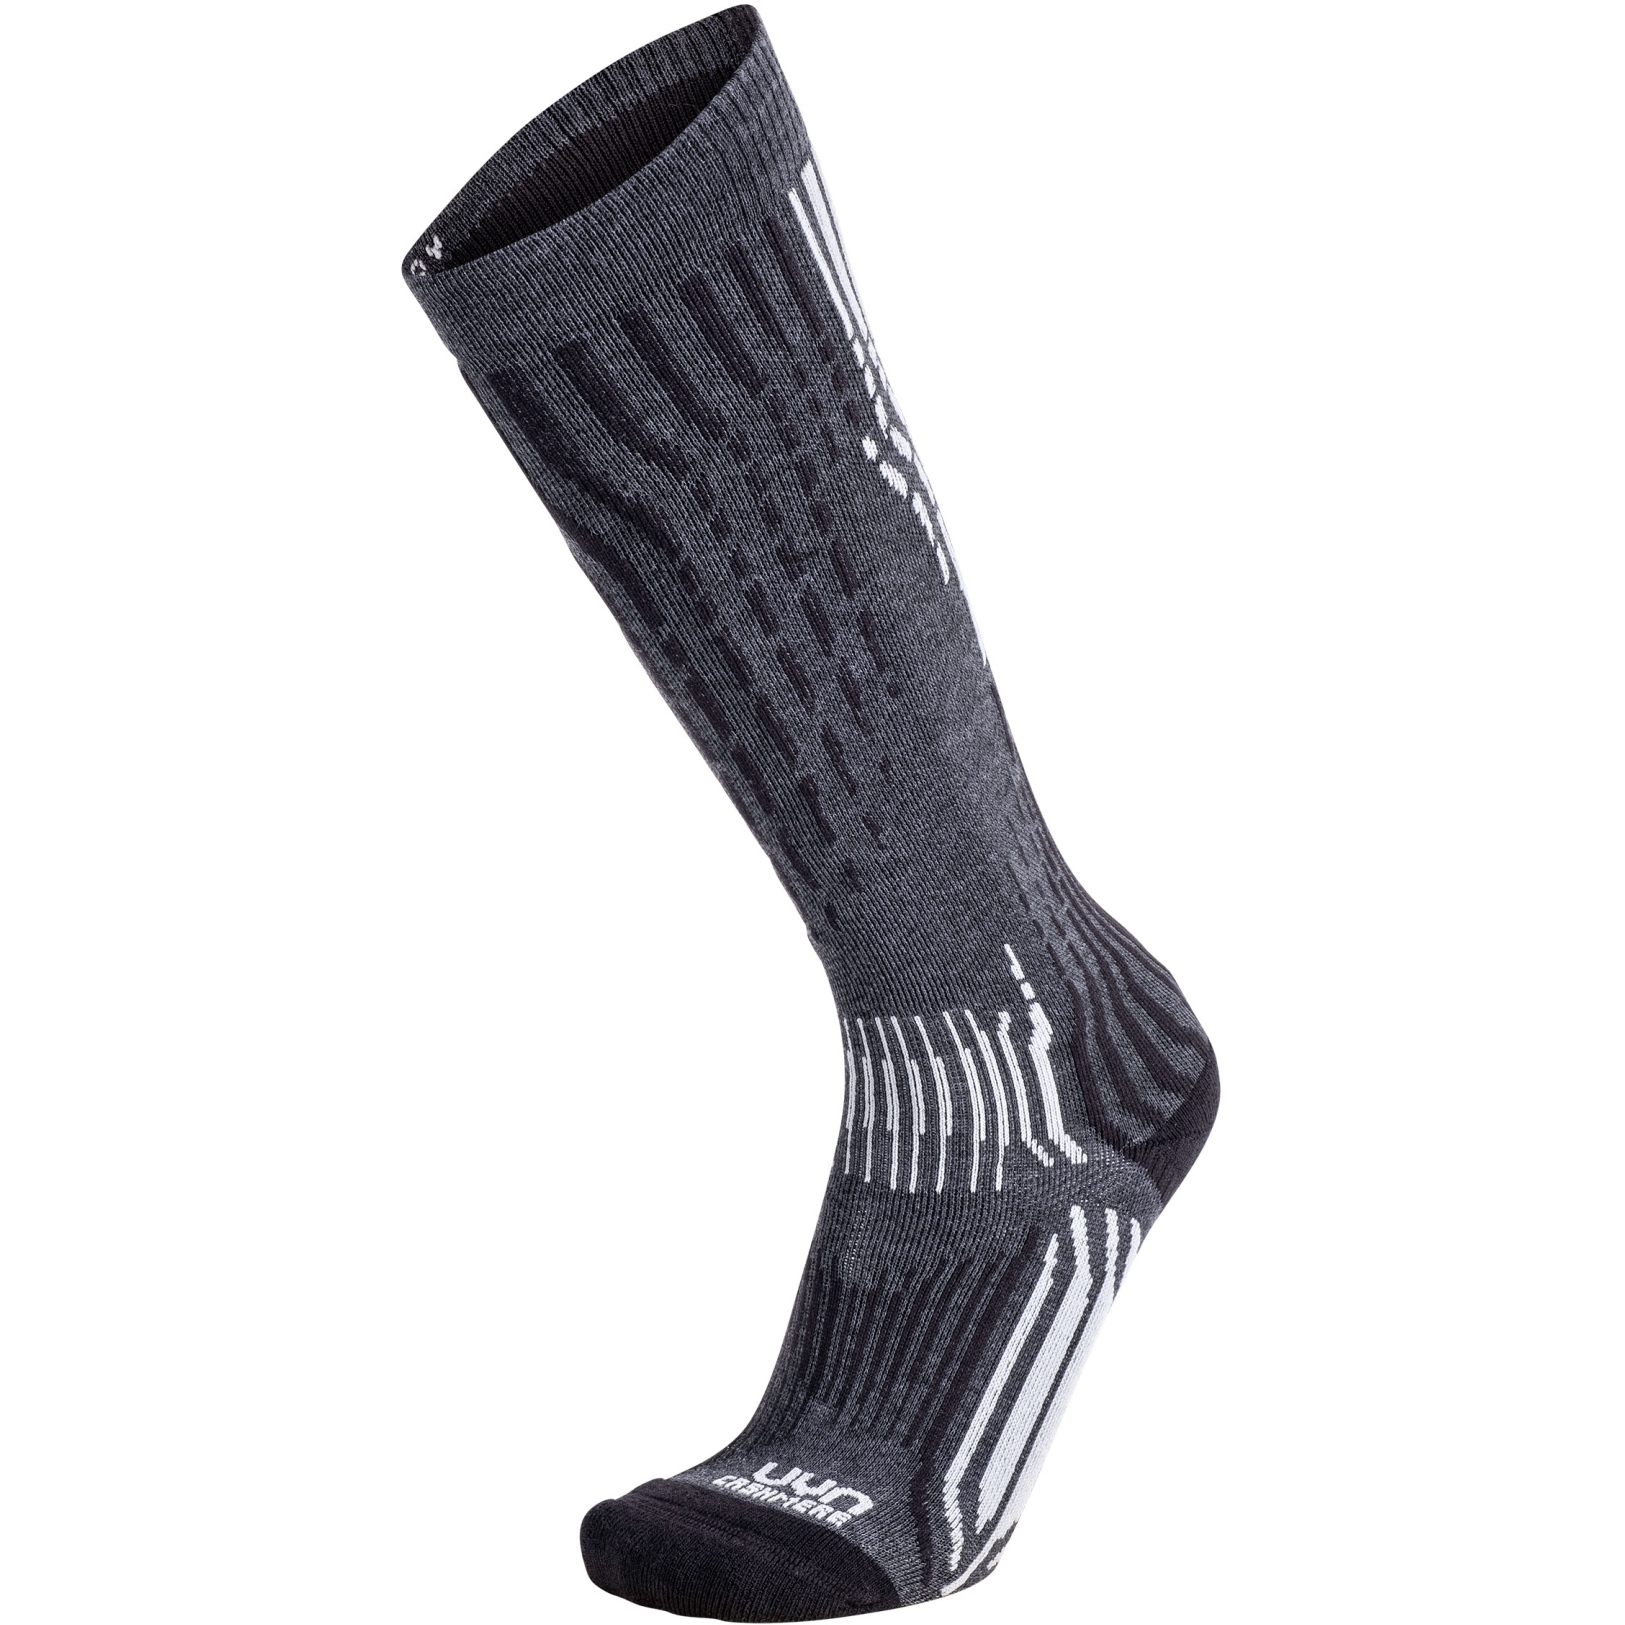 Produktbild von UYN Ski Cashmere Socken Damen - Grey Stone/Pearl